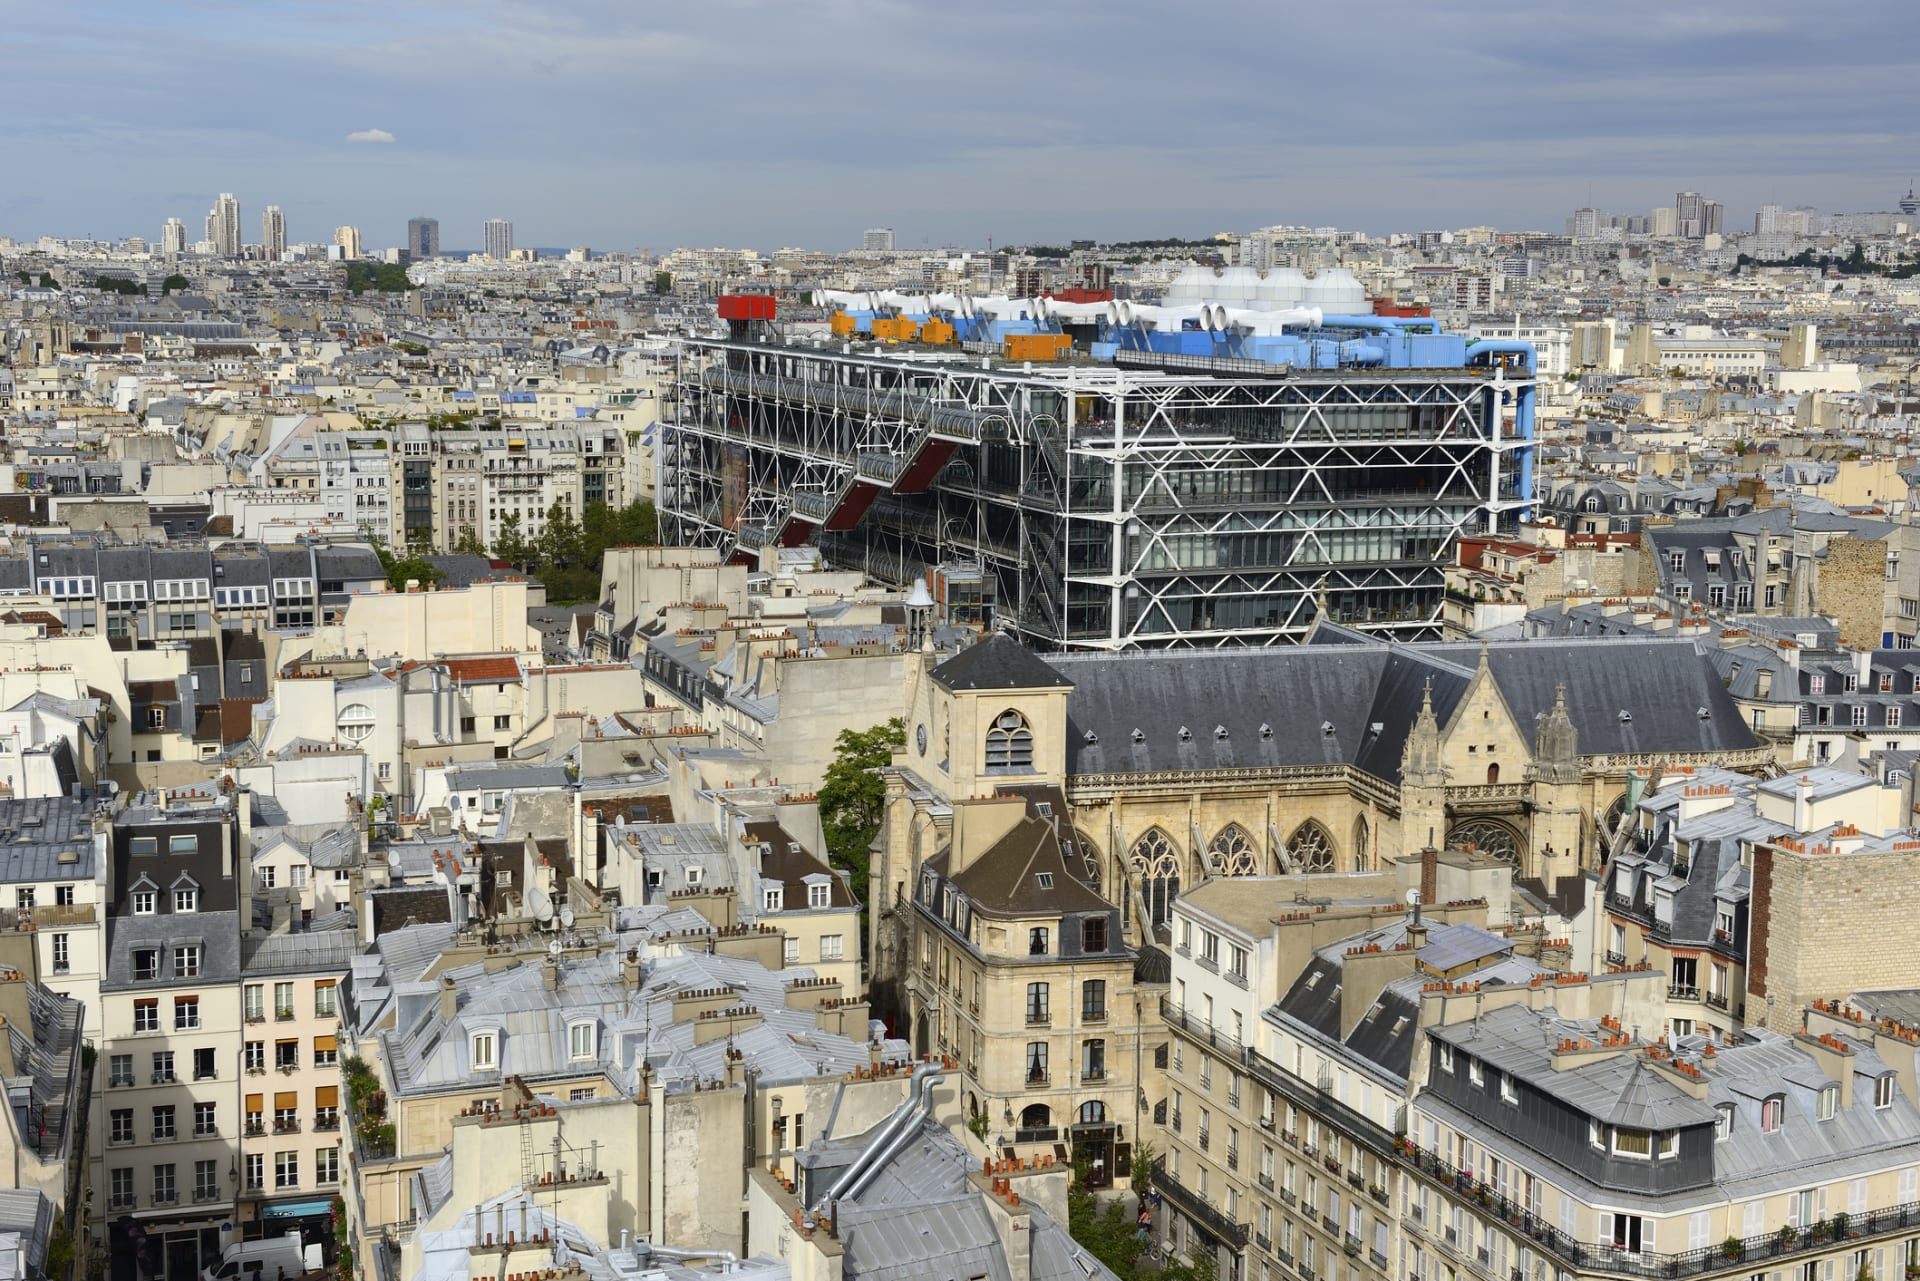 Centre Georges Pompidou [sántr žorž pompidú], plným názvem Centre national d'art et de culture Georges-Pompidou, zkráceně Centre Pompidou a hovorově také Beaubourg [bóbúr] je kulturní centrum a galerie moderního umění ve 4. okrese francouzské metropole Paříže, nedaleko bývalé tržnice Halles. 